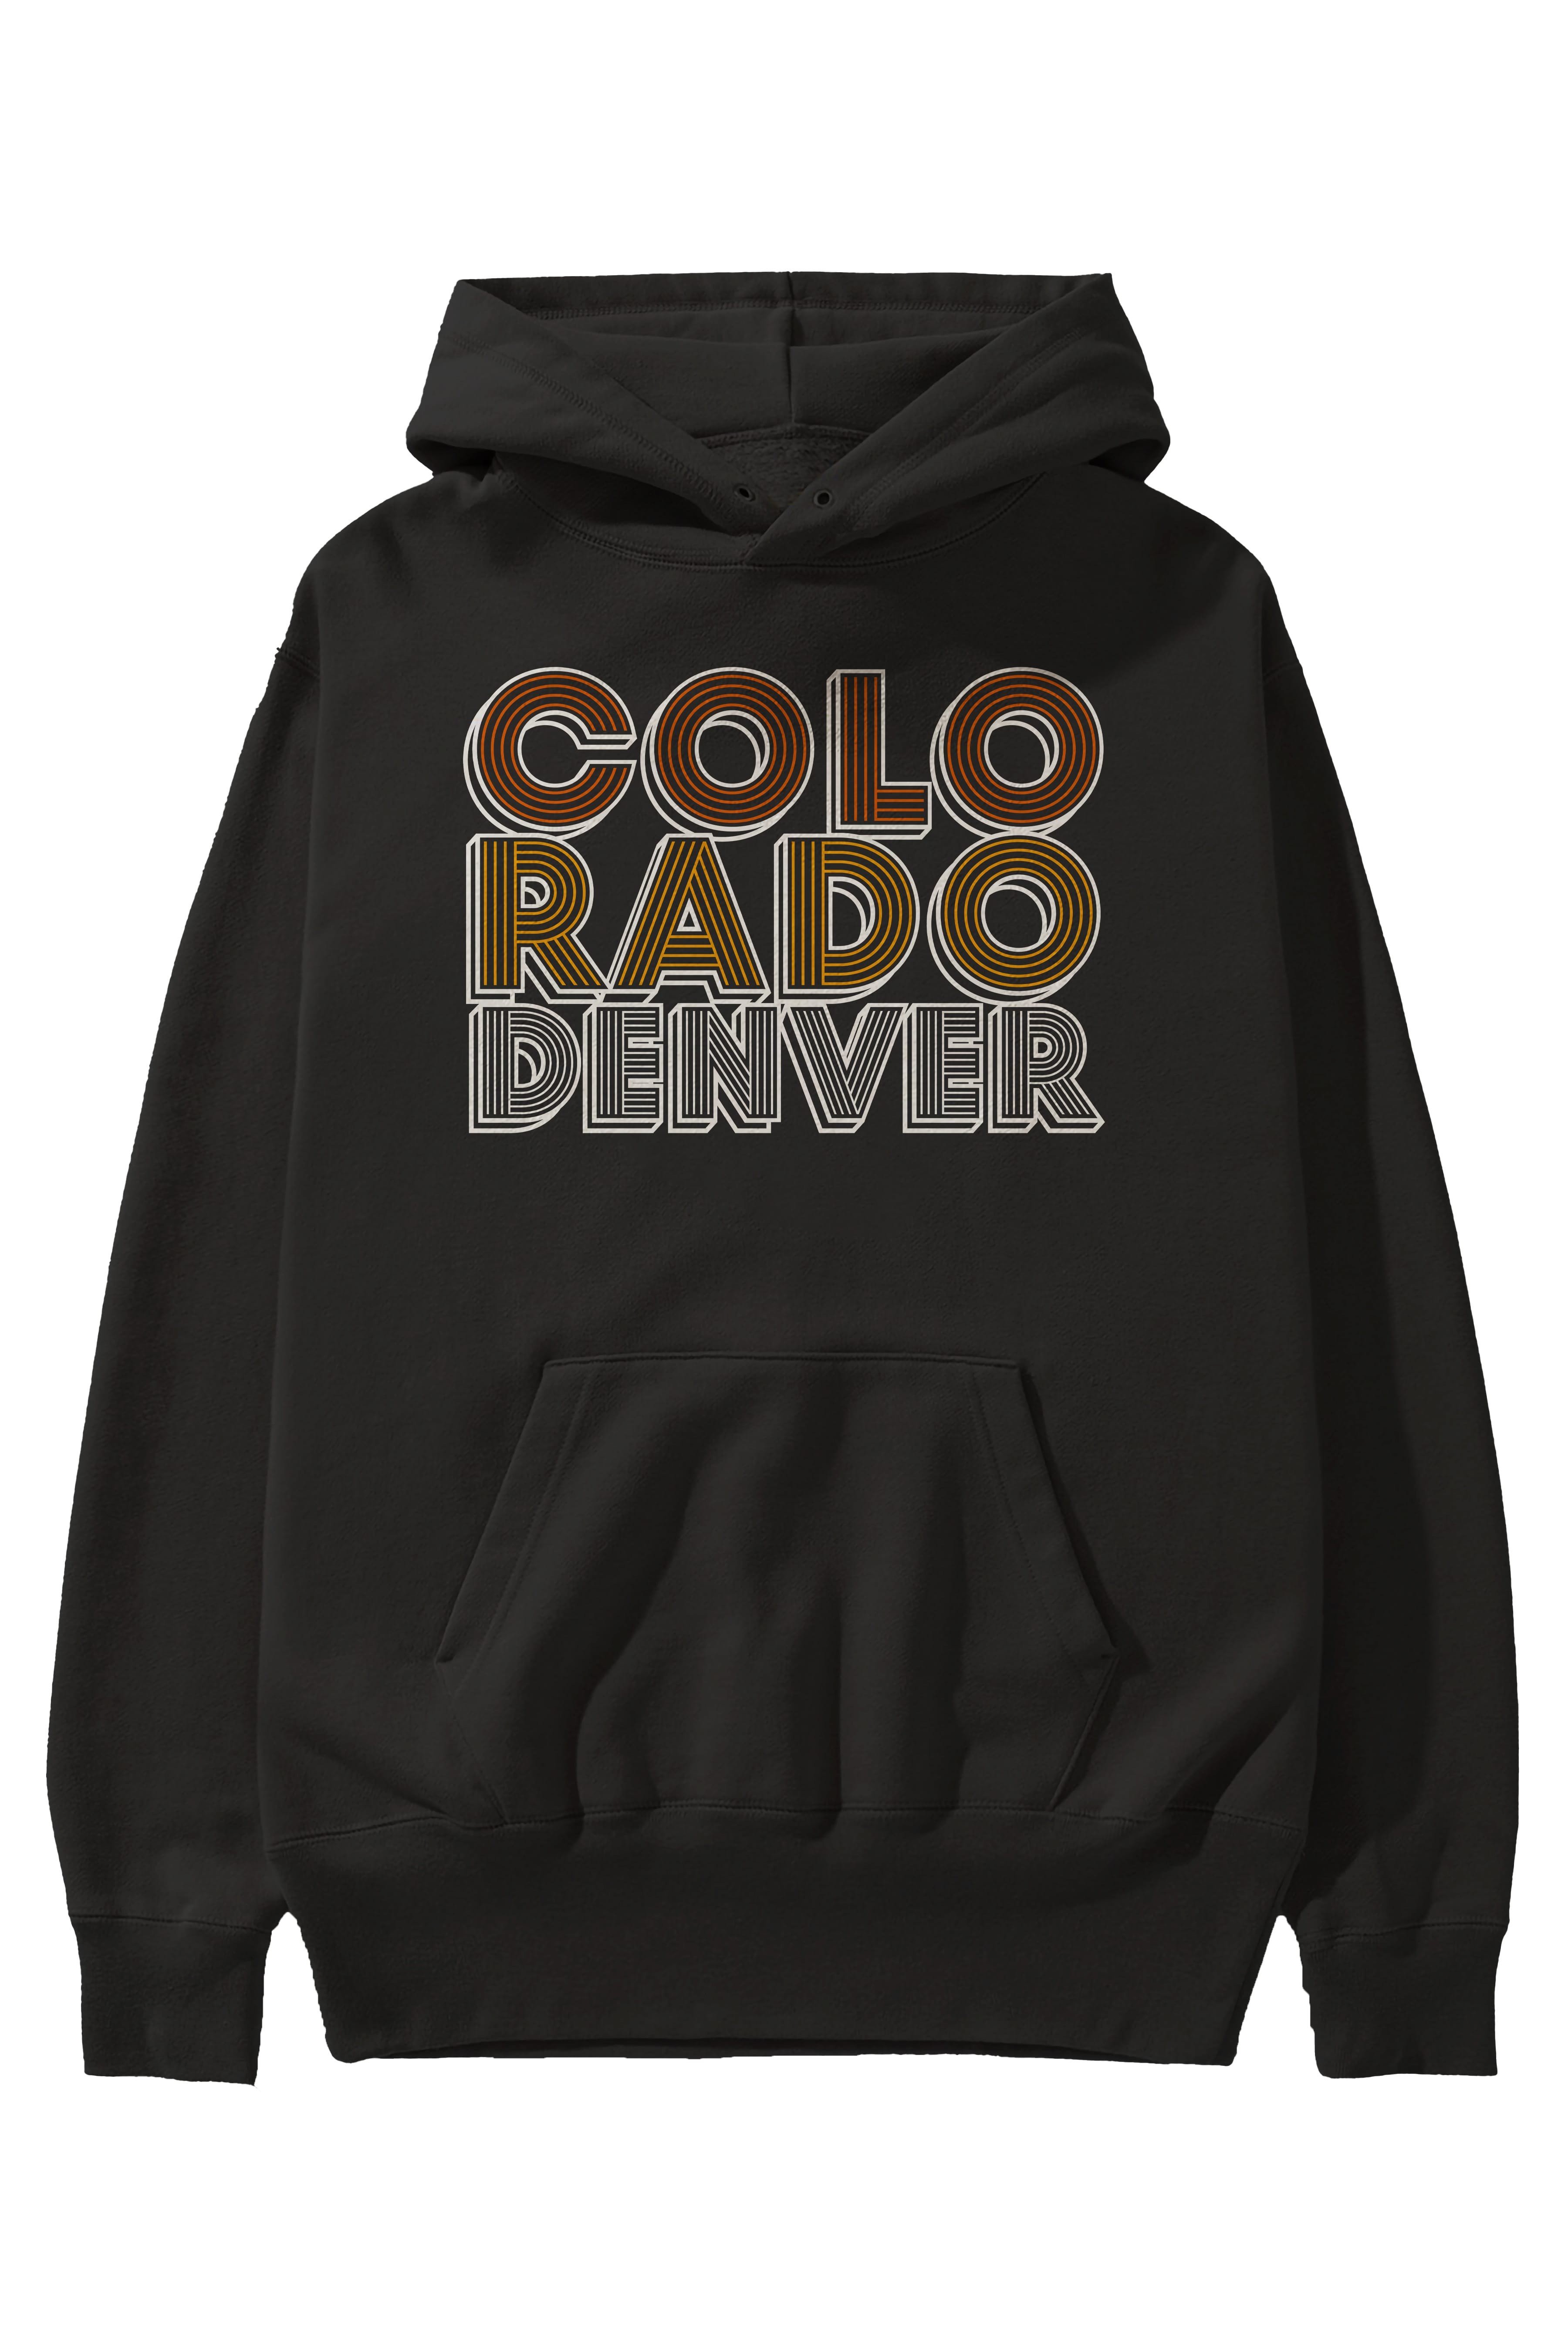 Colorado Denver Ön Baskılı Oversize Hoodie Kapüşonlu Sweatshirt Erkek Kadın Unisex